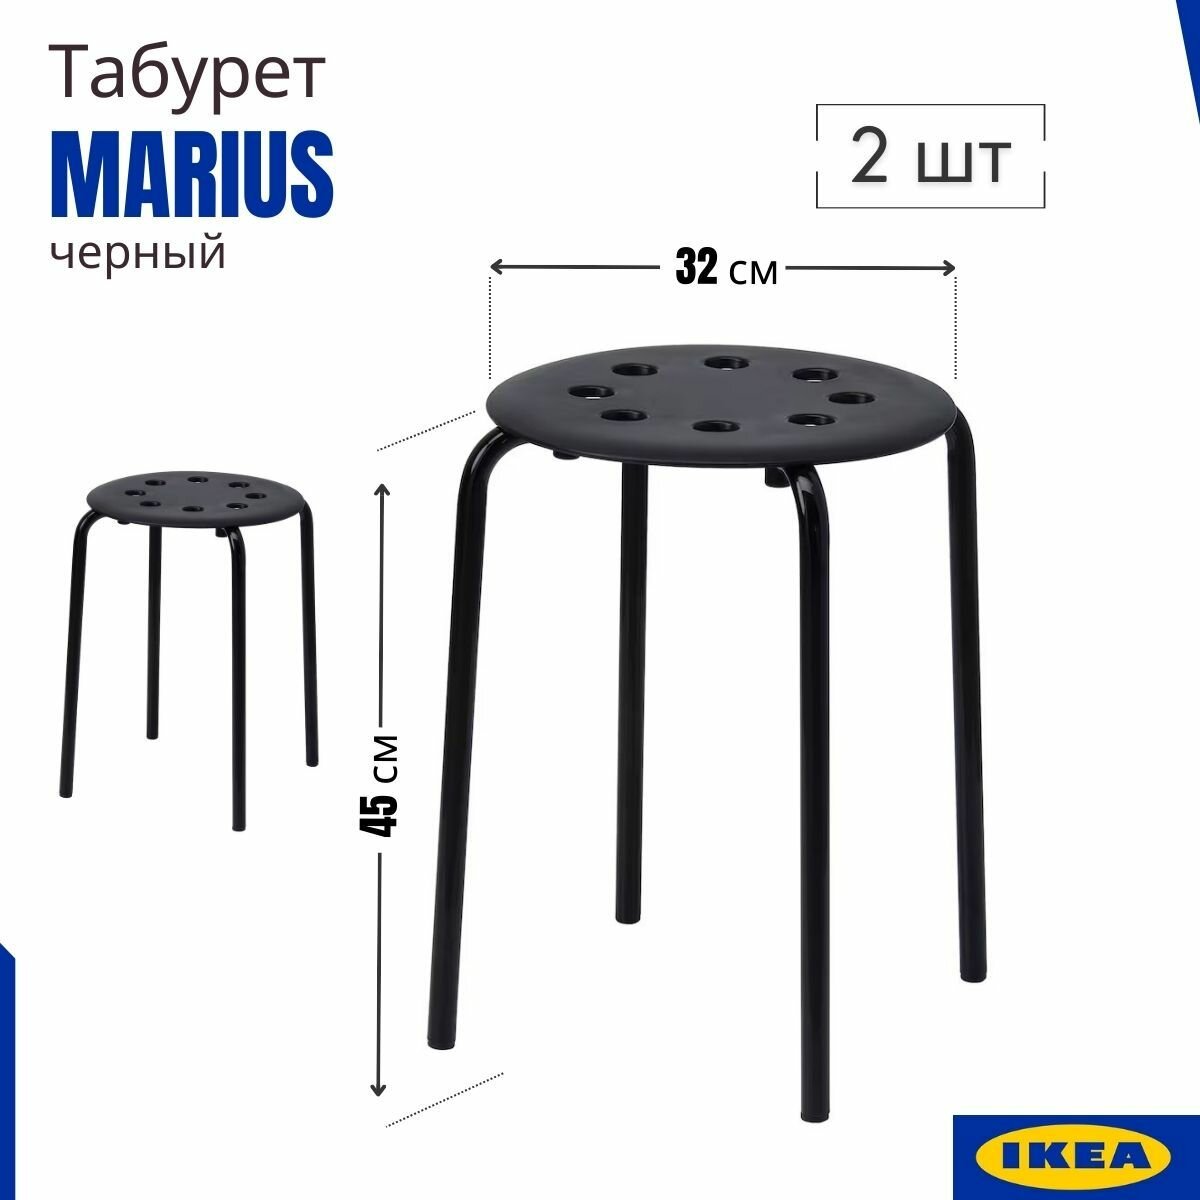 Табуретка икеа Мариус, для кухни, 2 шт, черный, табурет для кухни (Marius IKEA), 45 см